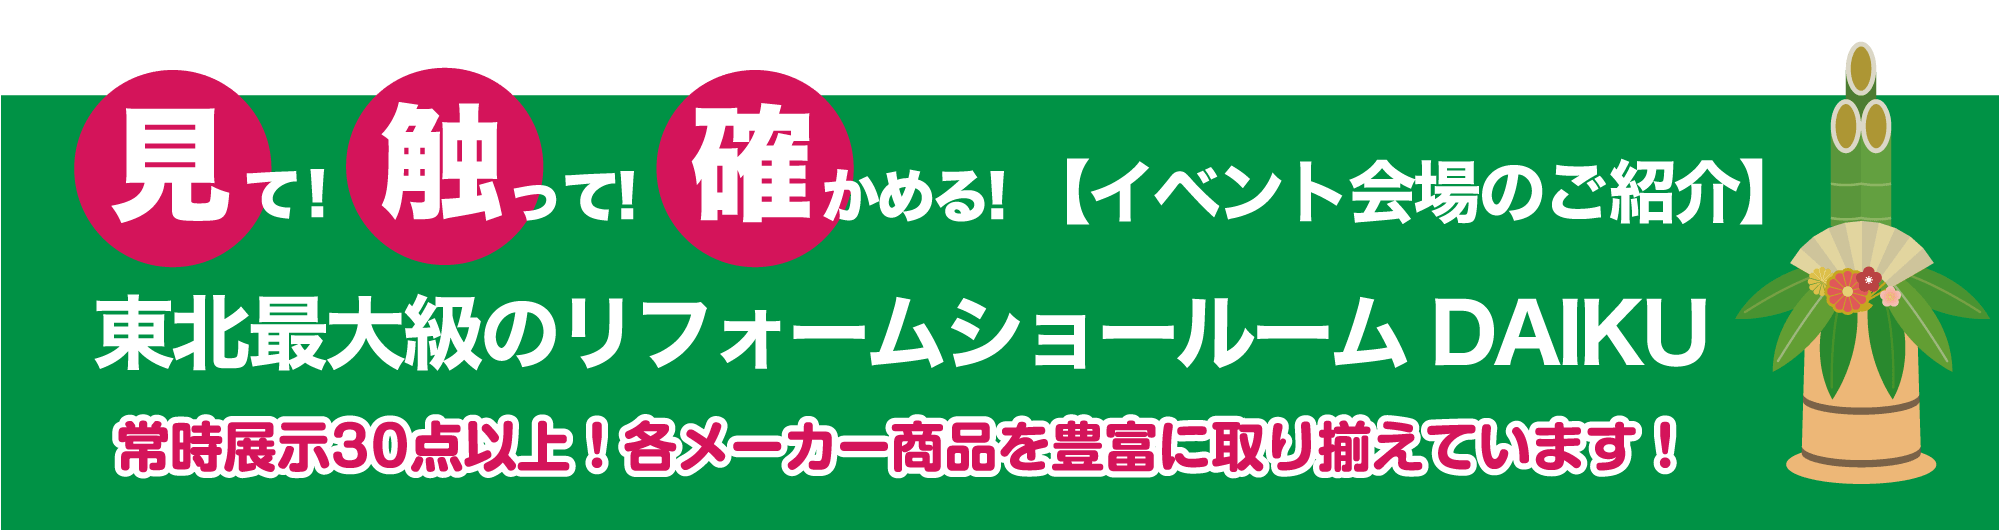 仙台のリフォーム専門店 ダイクショールーム 2021年新春リフォーム初売り祭